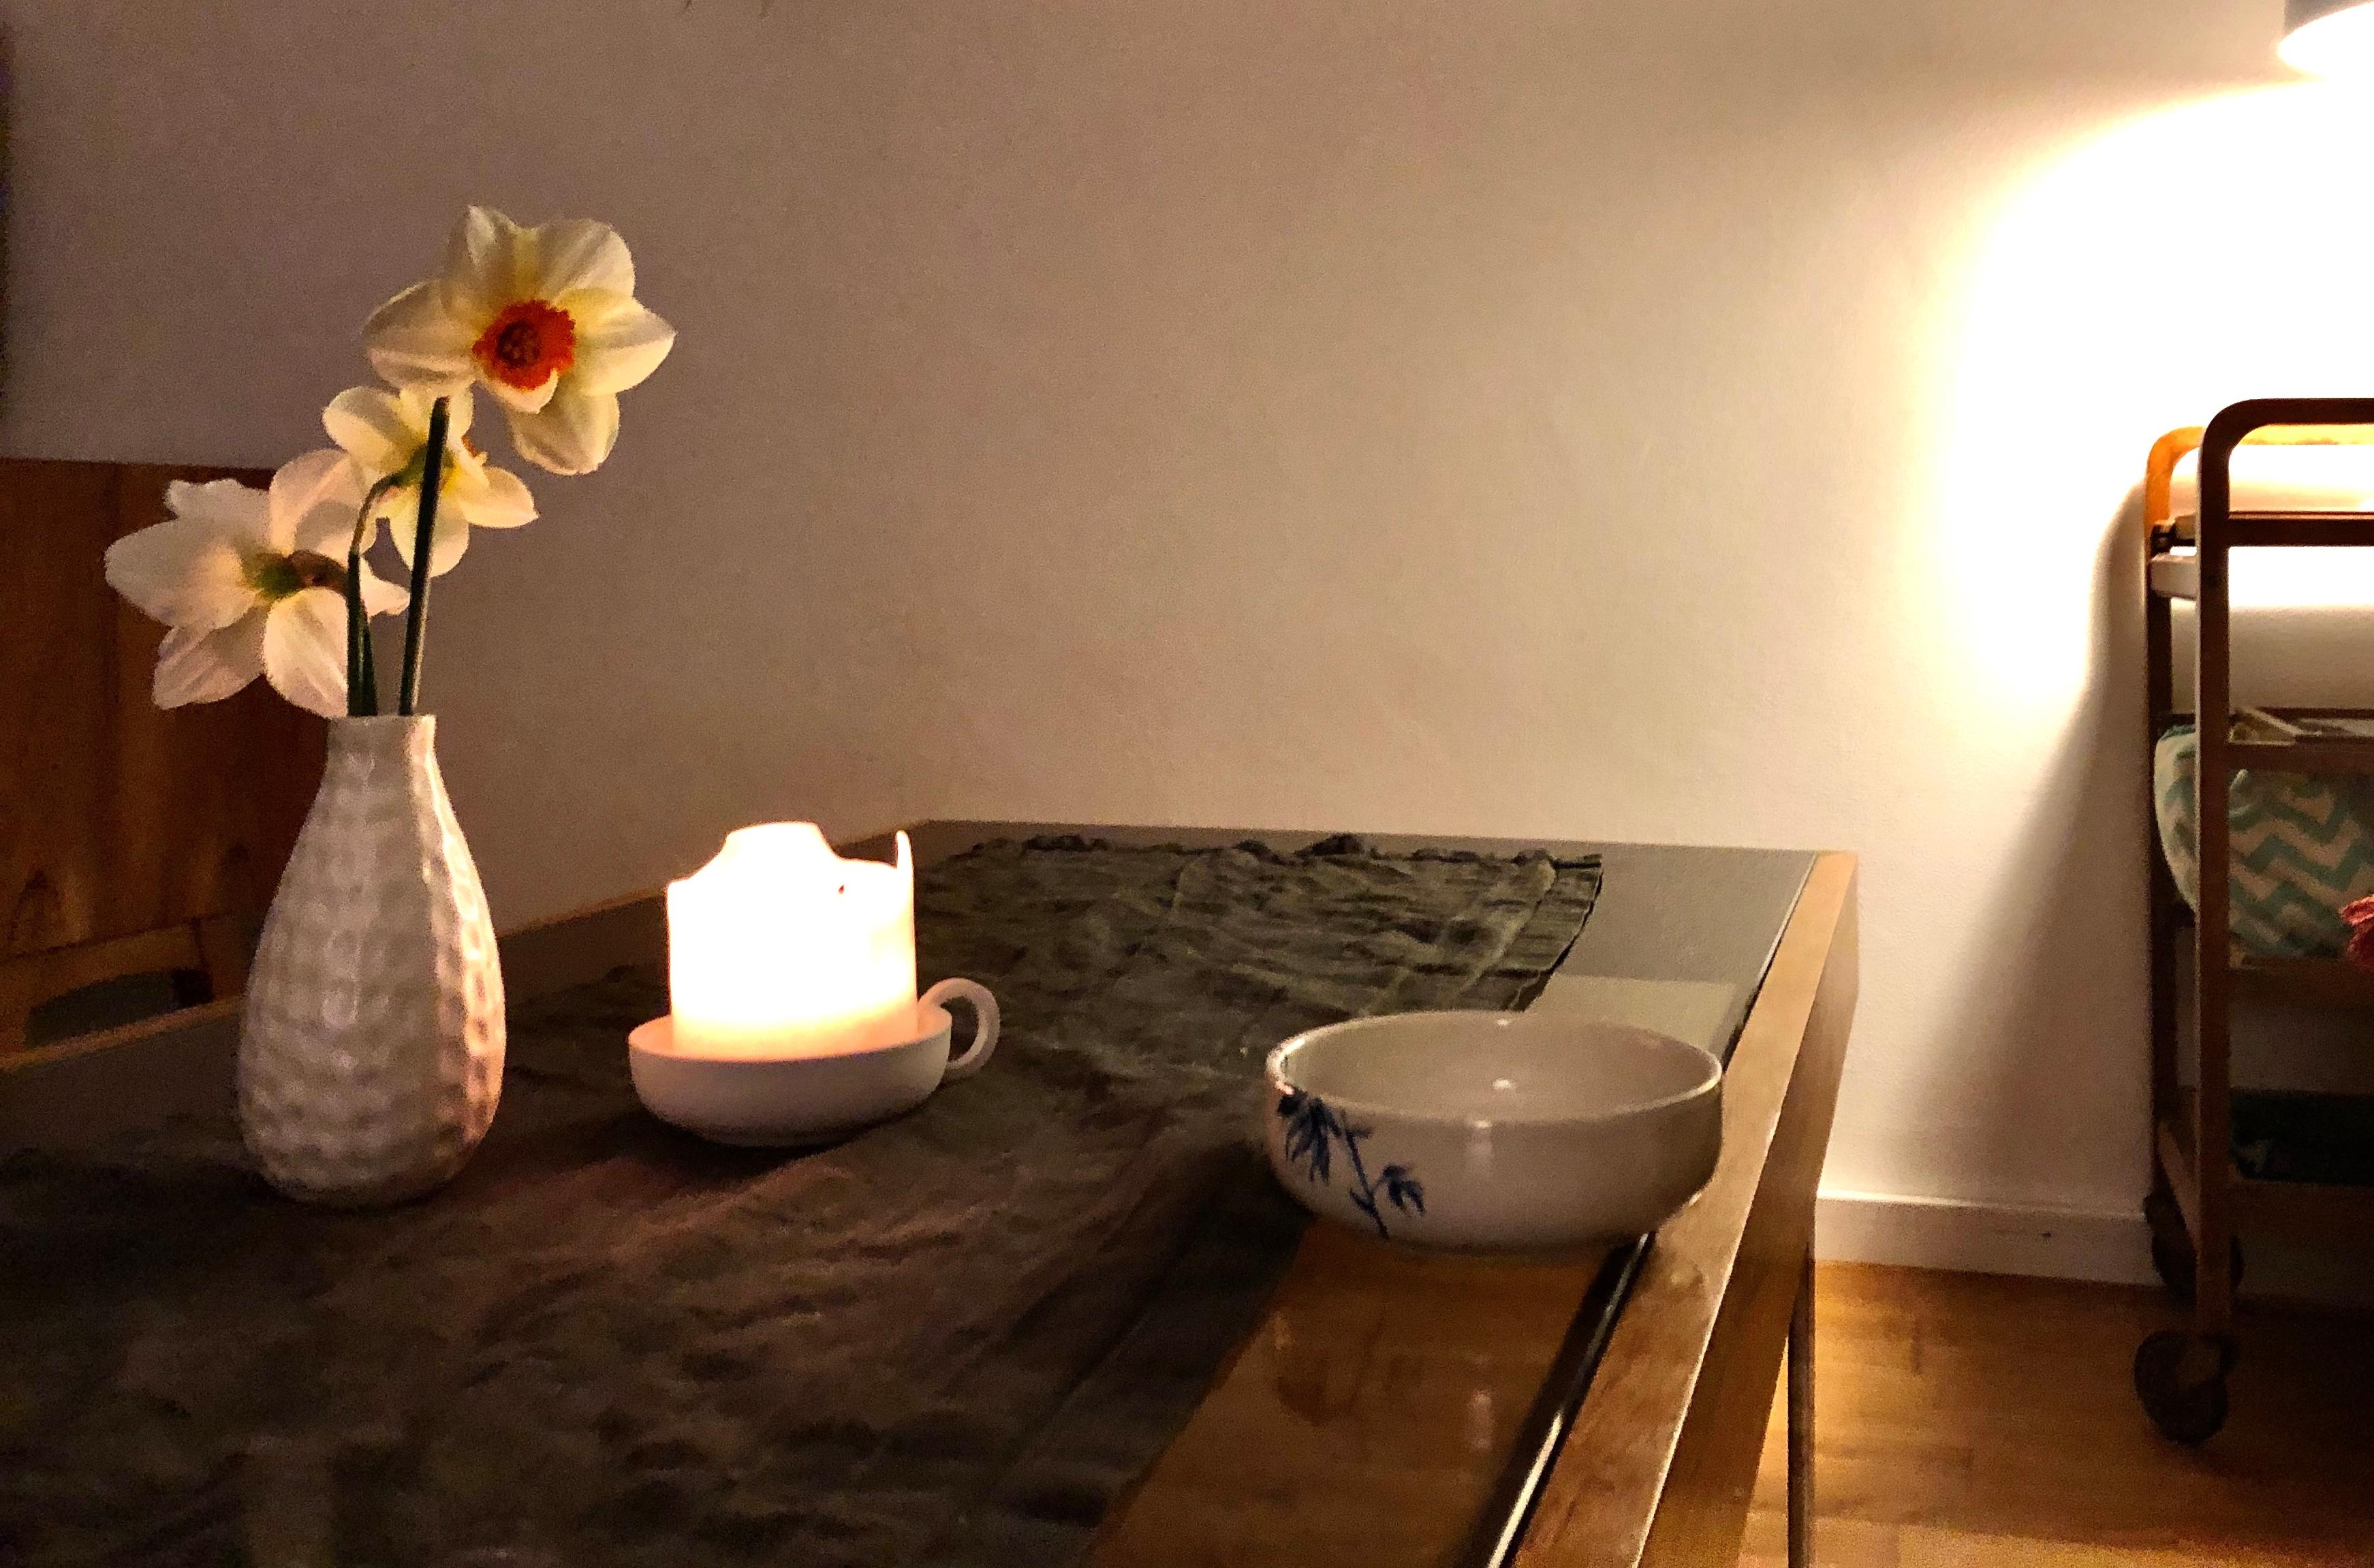 Der Frühling ist nah.
#narzissen 
#wohnzimmer
#kerzenlicht
#couchstyle